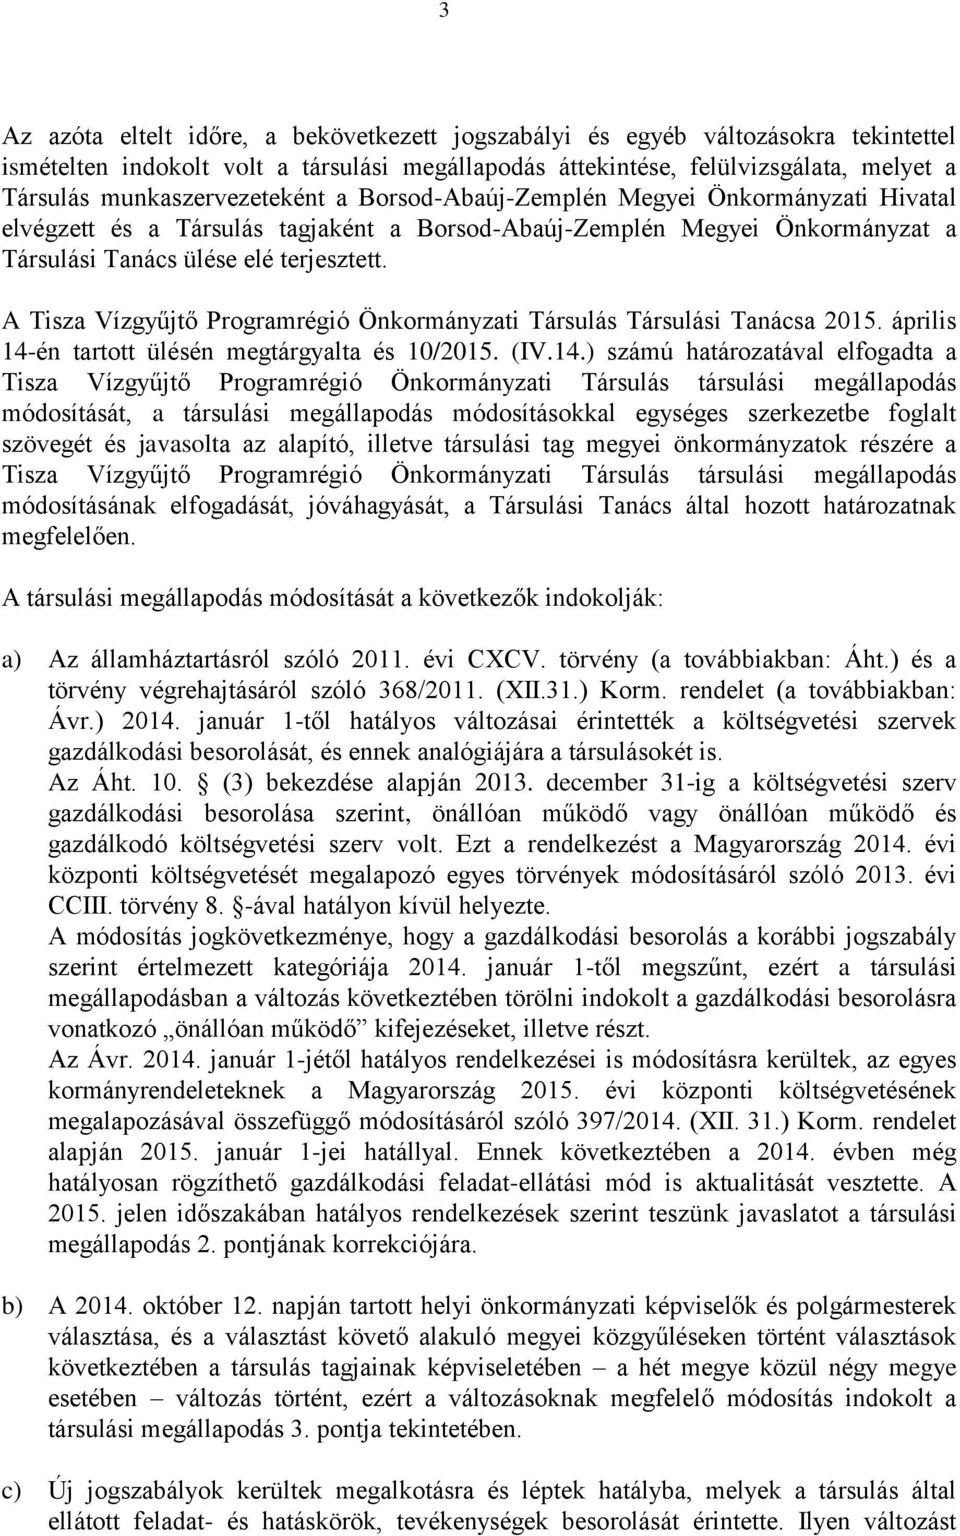 A Tisza Vízgyűjtő Programrégió Önkormányzati Társulás Társulási Tanácsa 2015. április 14-